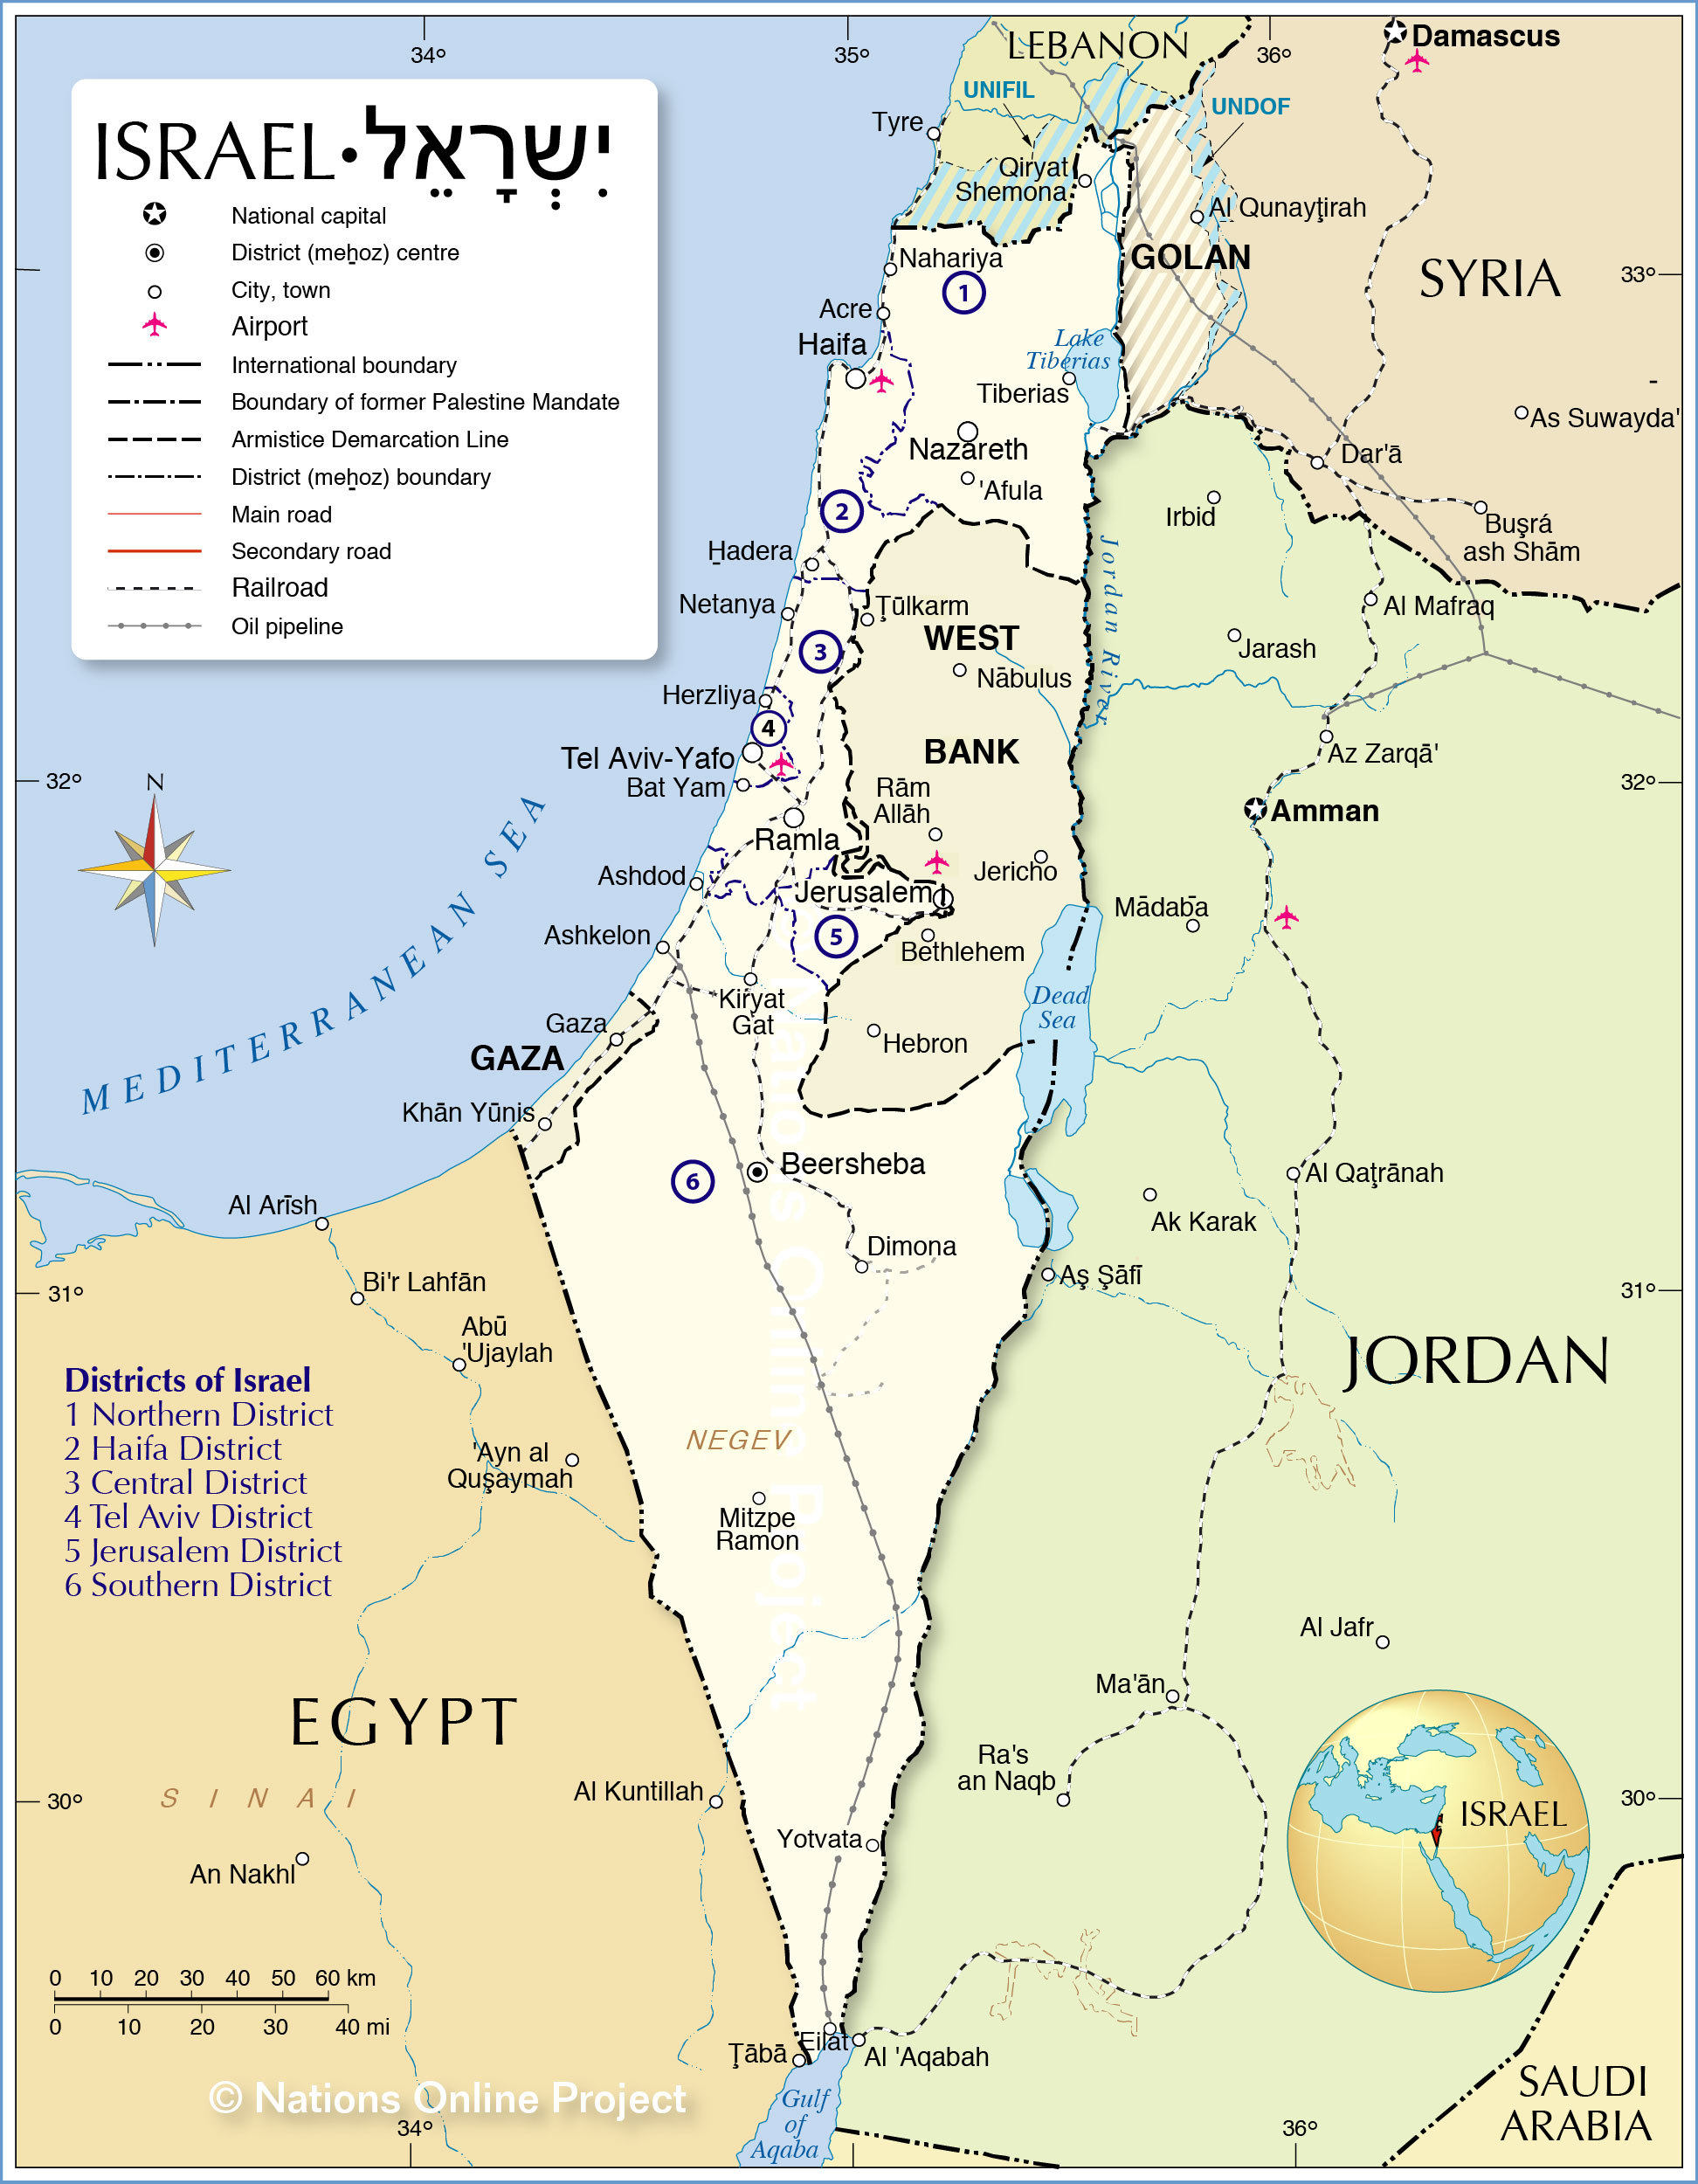 Nationsonline, 0907.2020, https://www.nationsonline.org/oneworld/map/israel_map2.htm